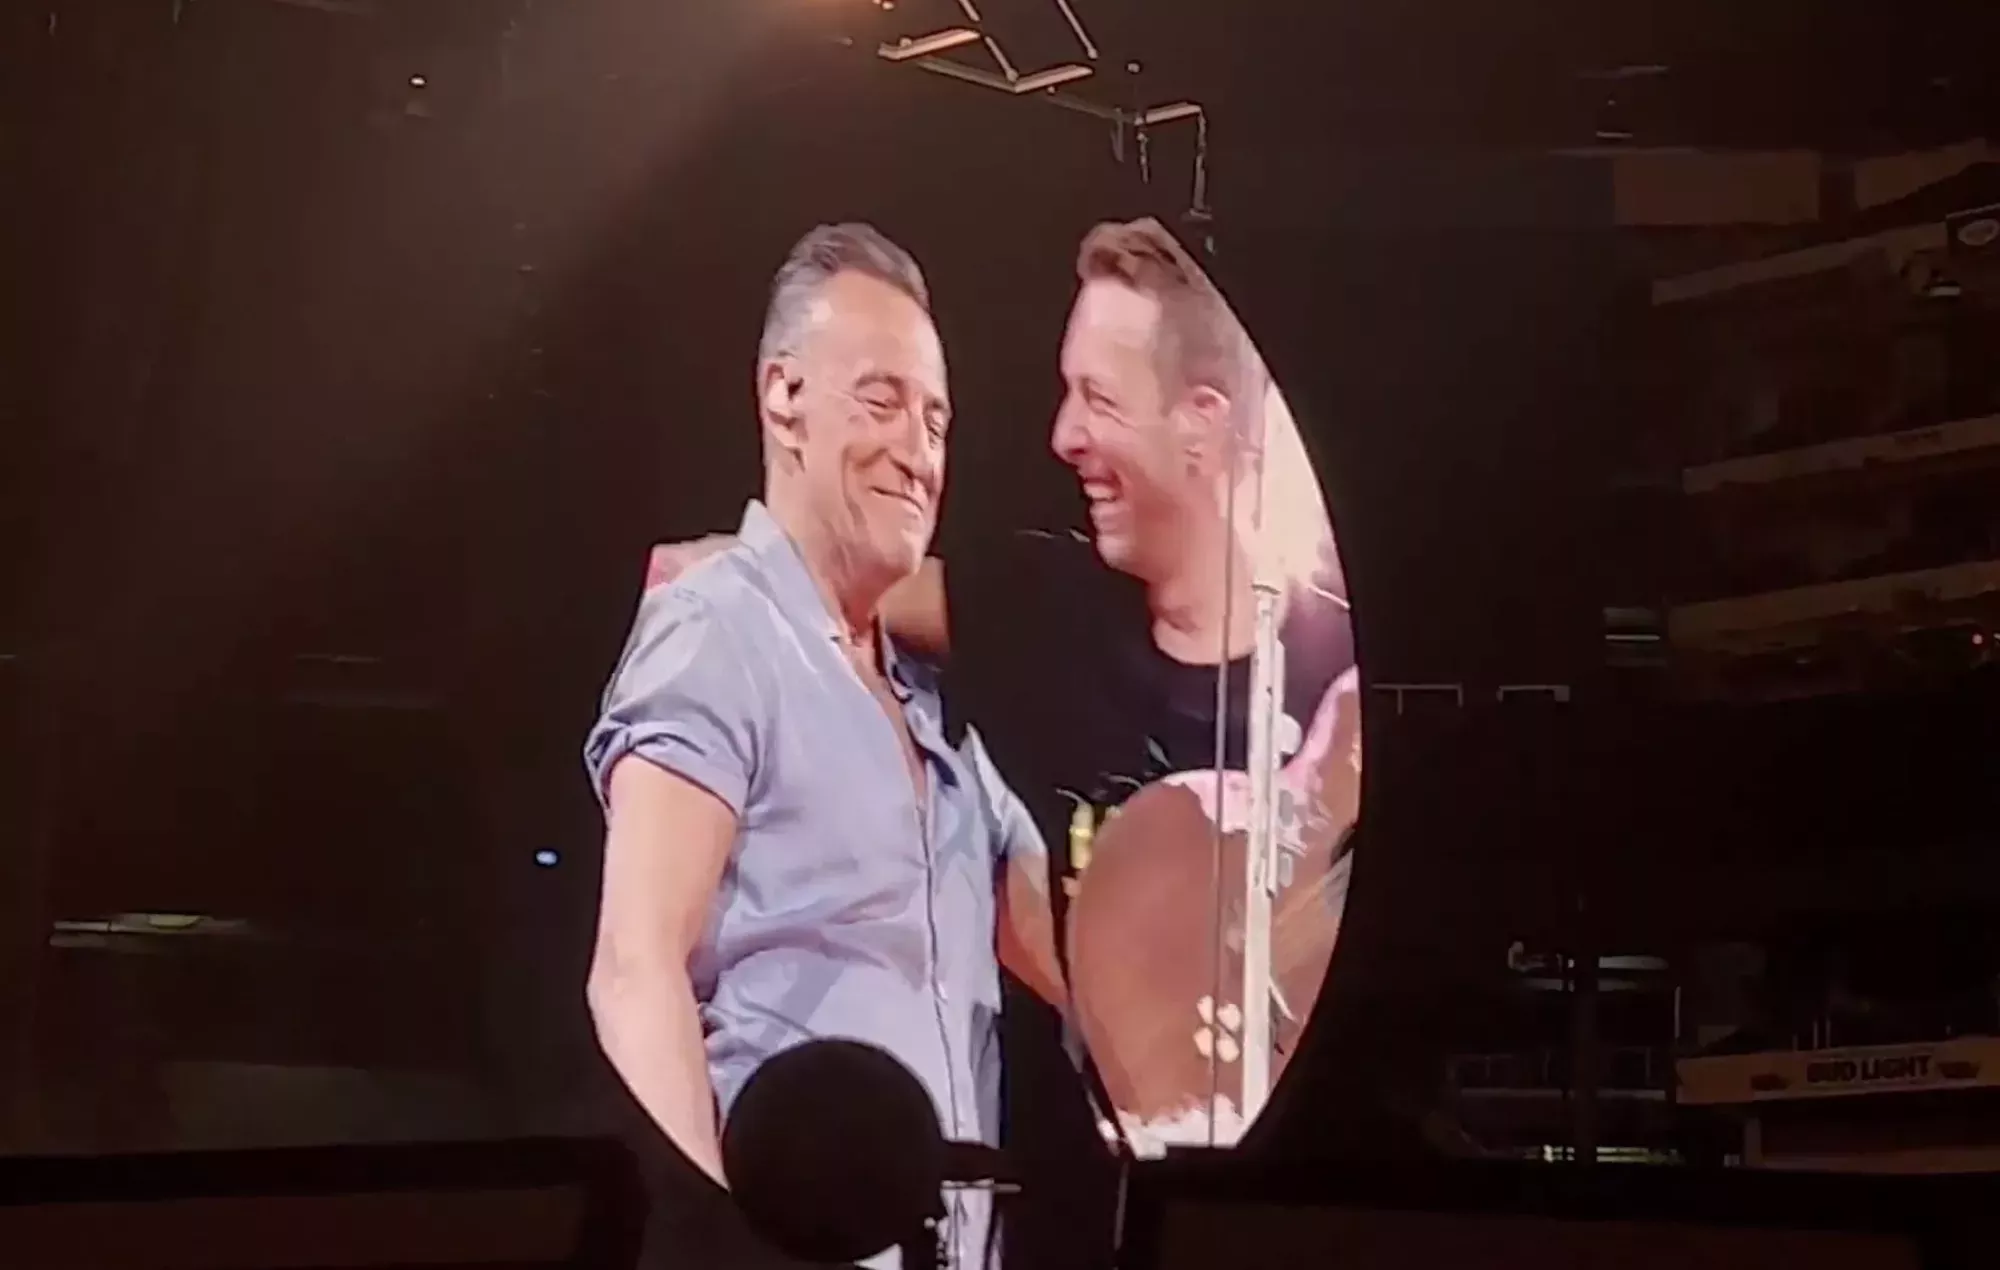 Bruce Springsteen se une a Coldplay en el escenario de Nueva Jersey | Cultture